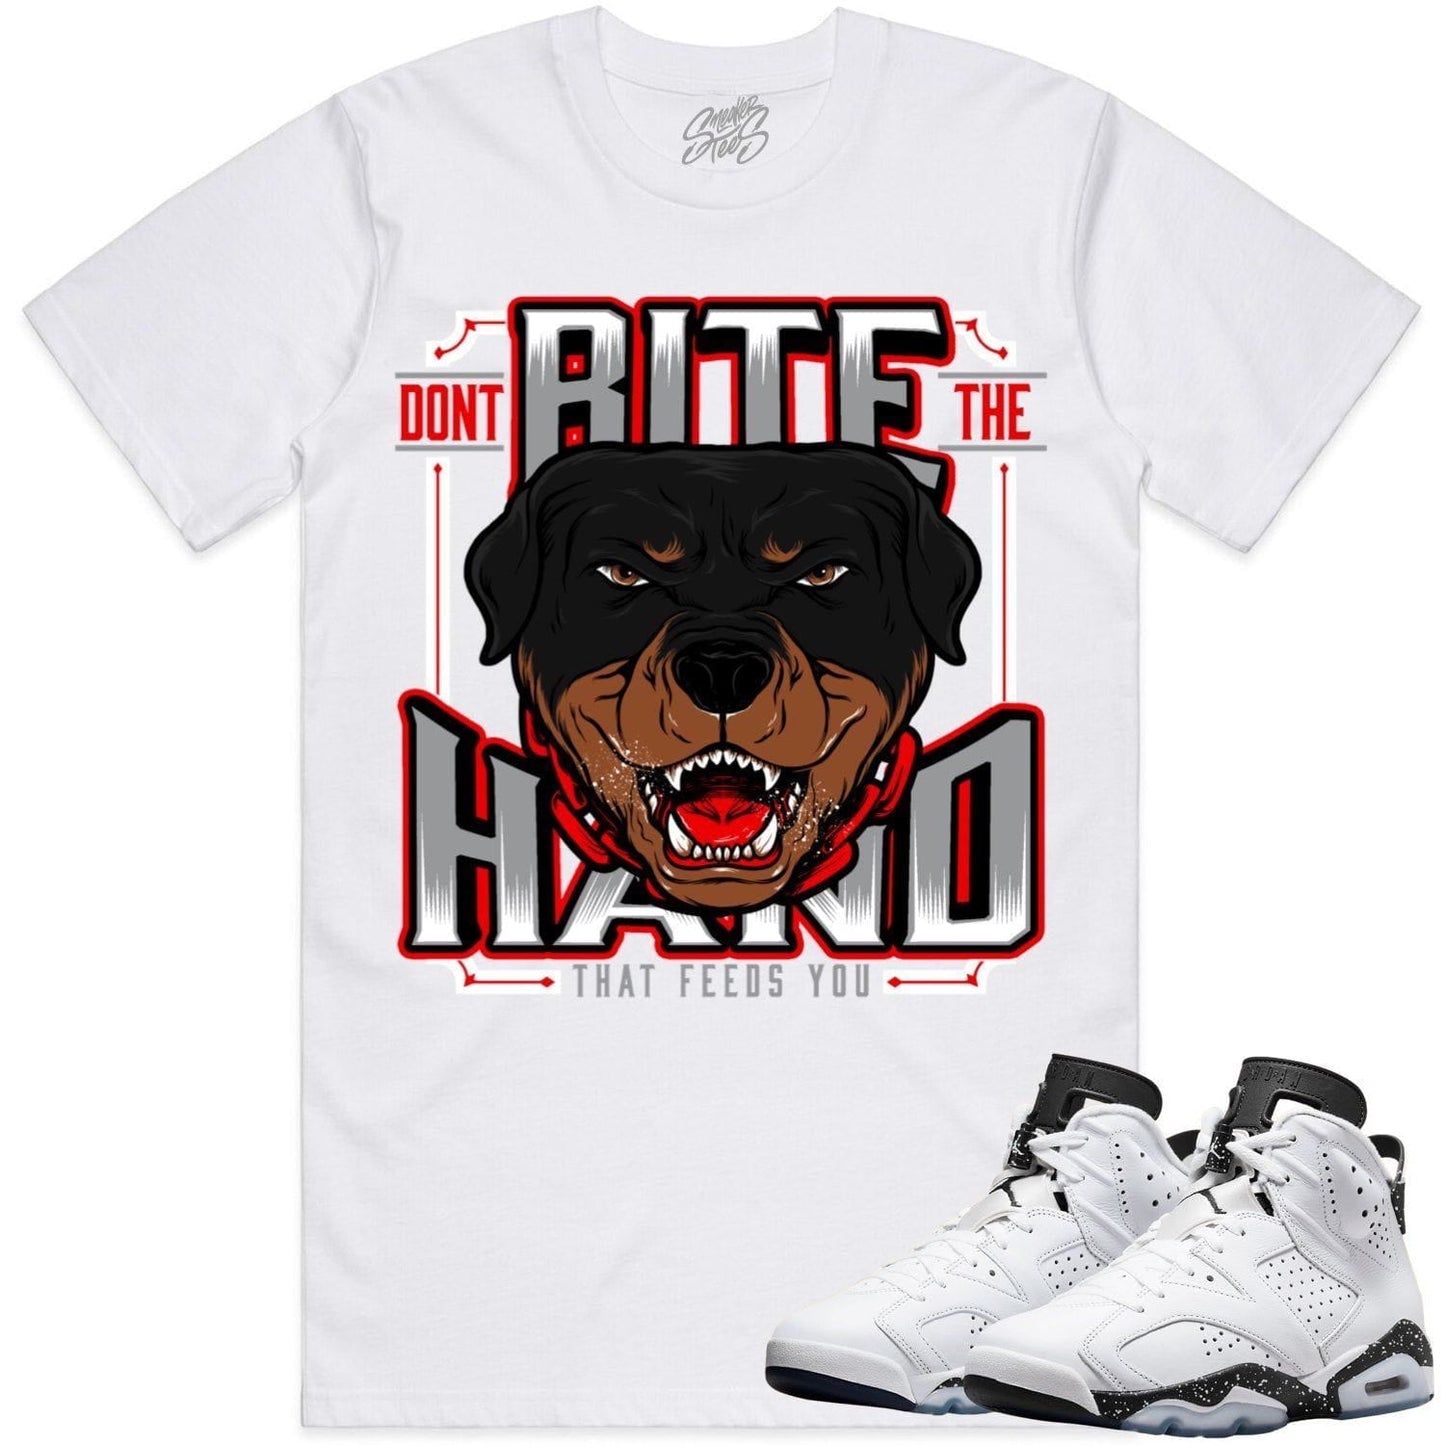 Oreo 6s Shirts - Jordan 6 Reverse Oreo 6s Sneaker Tees - Dont Bite